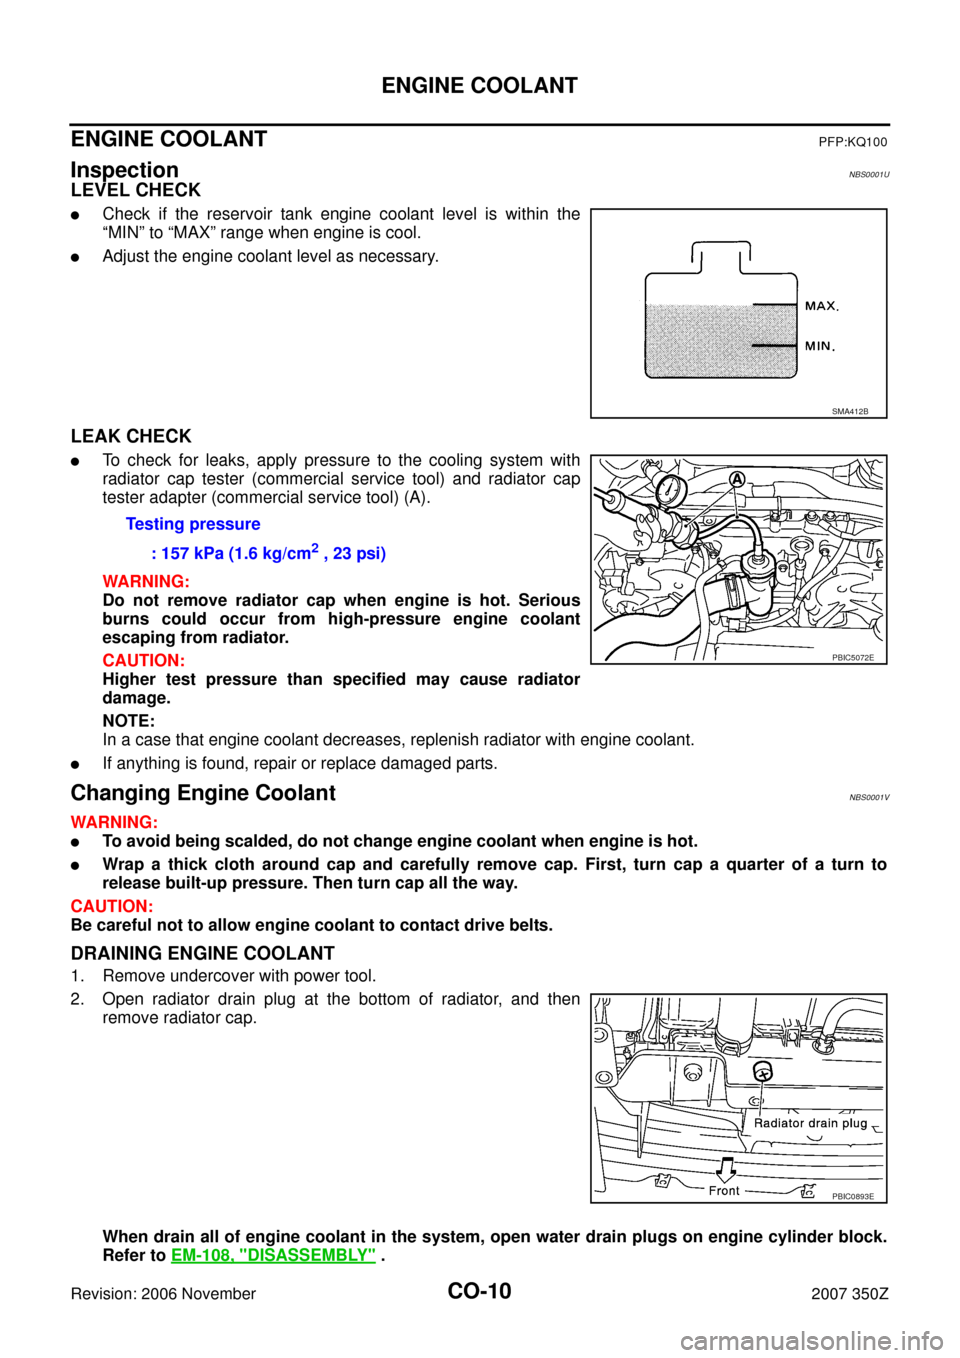 NISSAN 350Z 2007 Z33 Engine Cooling System Workshop Manual CO-10
ENGINE COOLANT
Revision: 2006 November2007 350Z
ENGINE COOLANTPFP:KQ100
InspectionNBS0001U
LEVEL CHECK
Check if the reservoir tank engine coolant level is within the
“MIN” to “MAX” rang